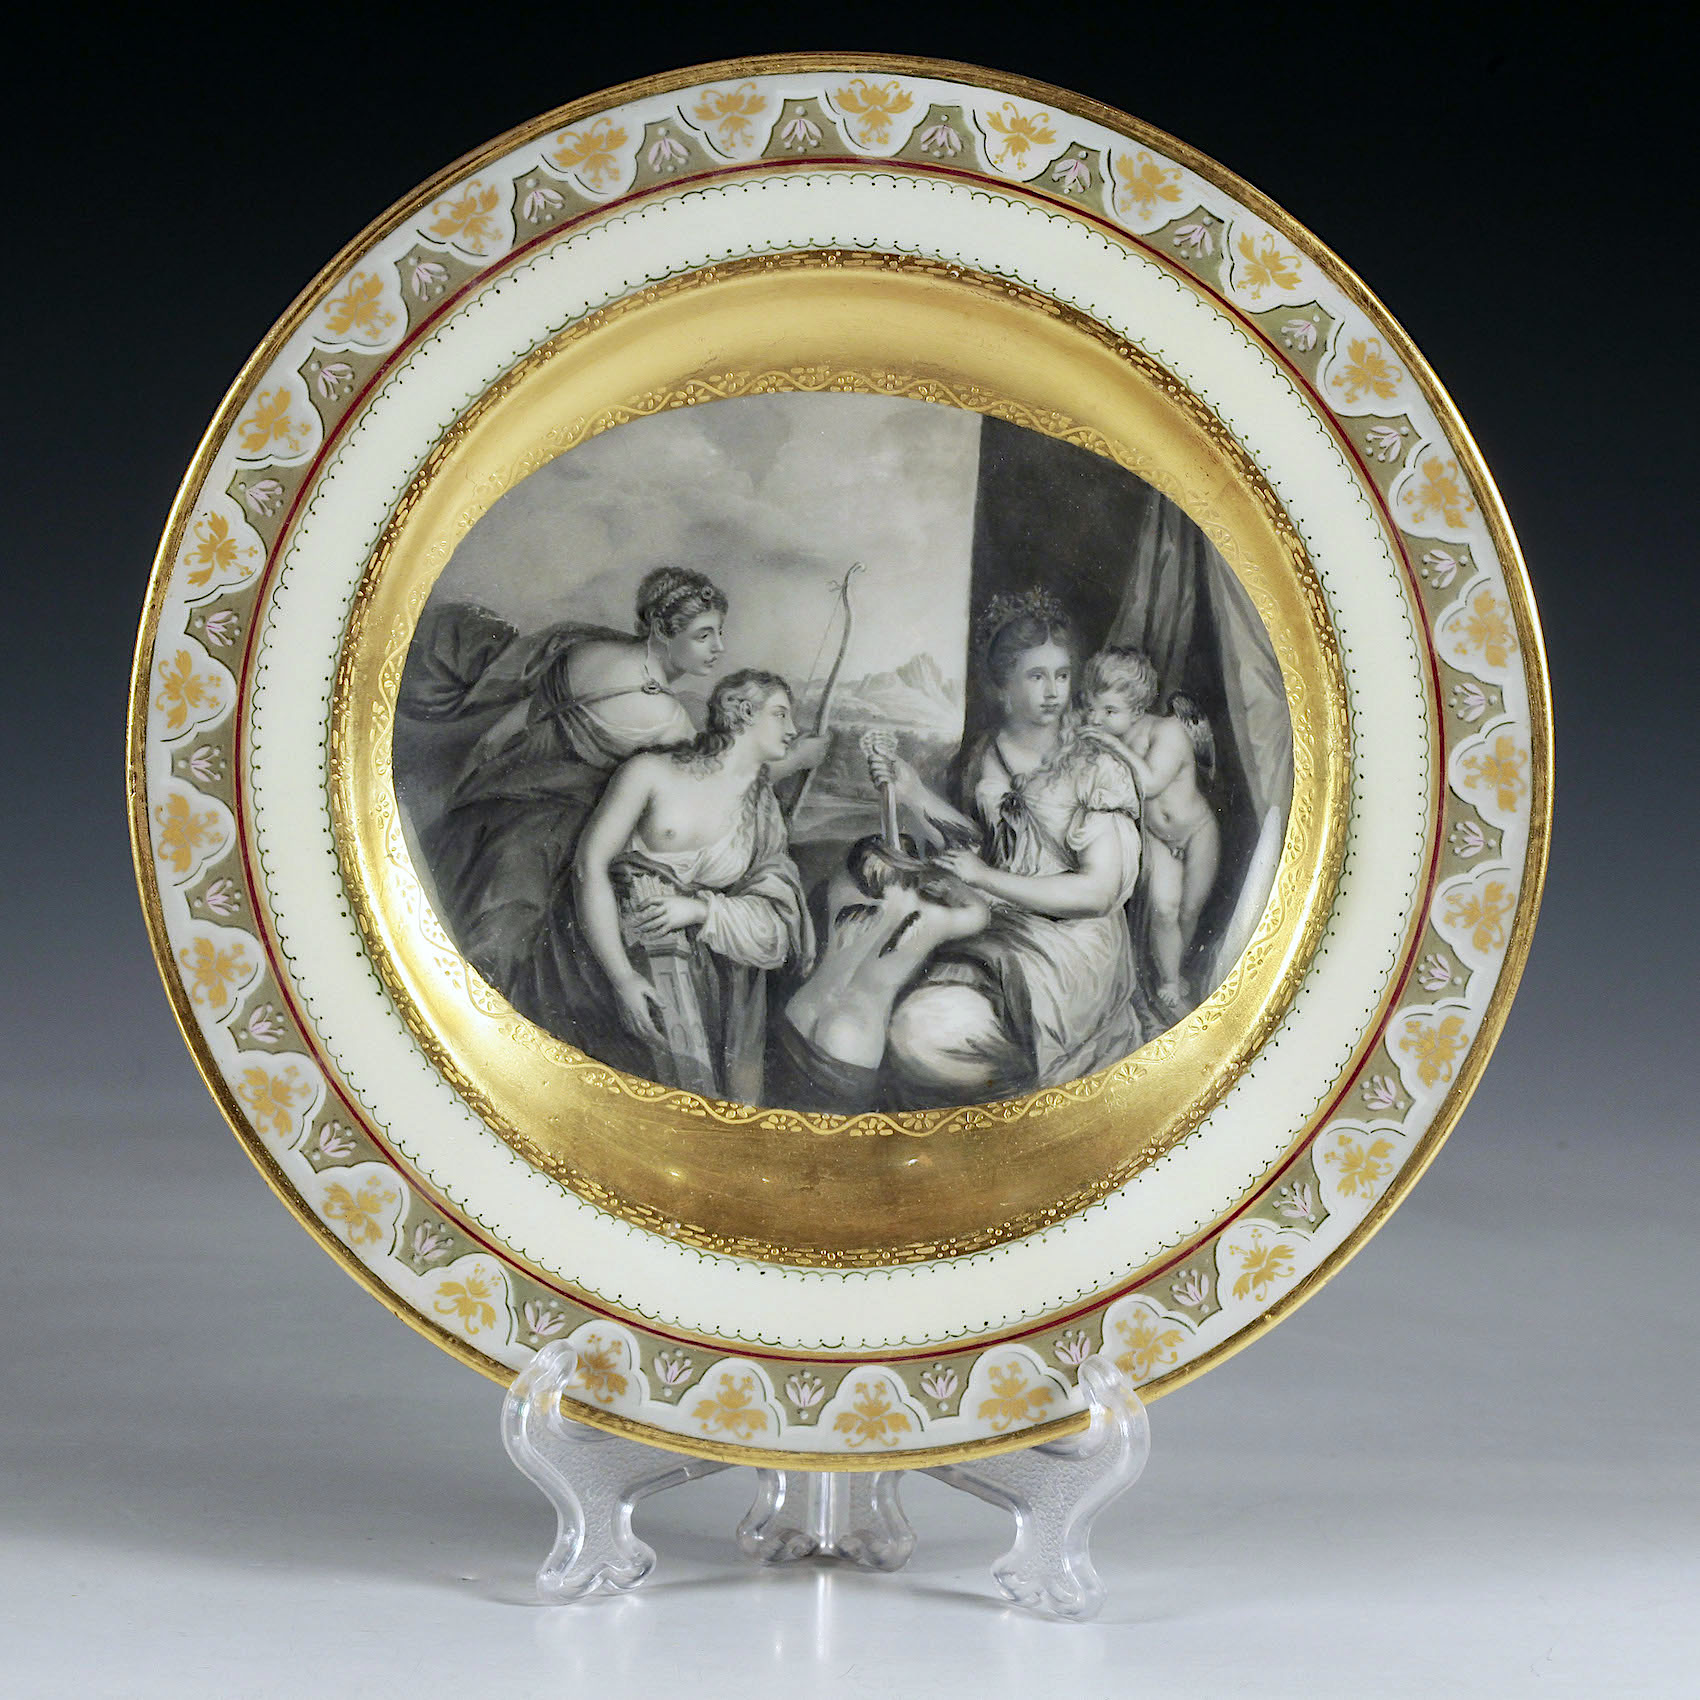 Декоративная тарелка с сюжетом на тему картины Тициана и гравюры Роберта Стрейнджа